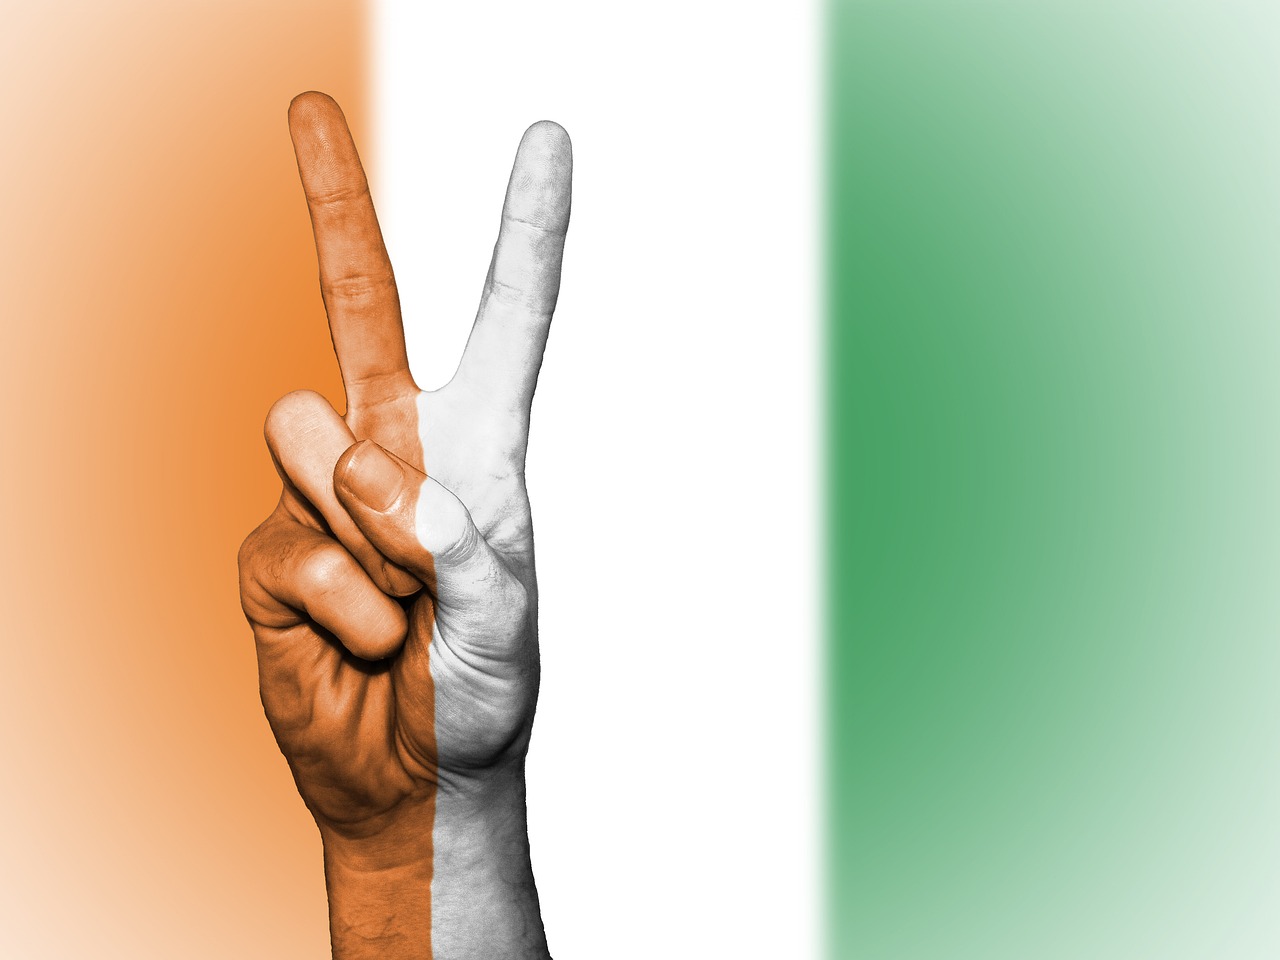 Côte d’Ivoire peace sign image with flag